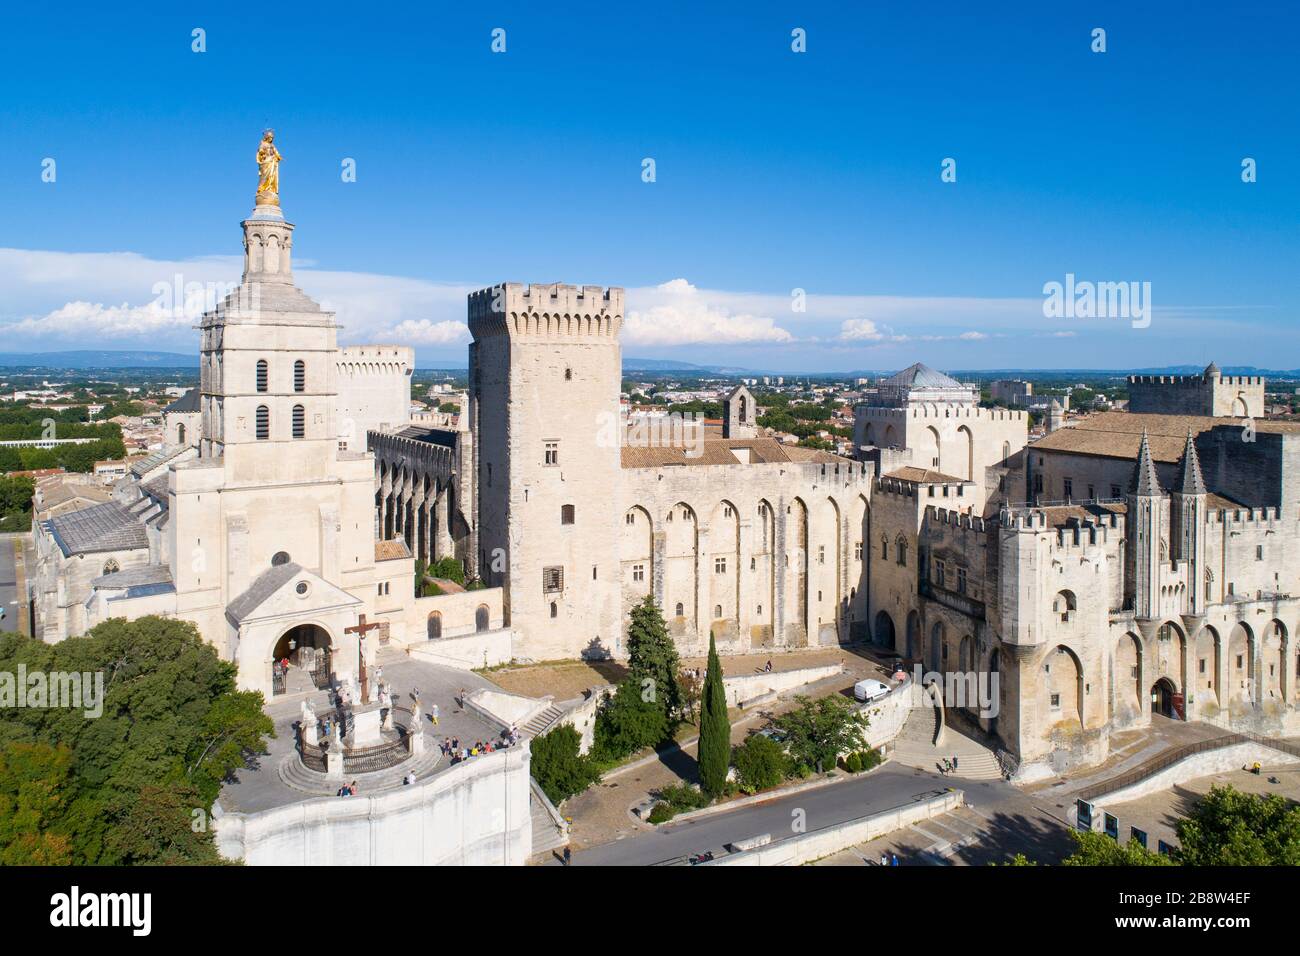 Luftbild des Palastes von Päpsten, Avignon, das von der UNESCO zum Weltkulturerbe ernannt wurde Stockfoto